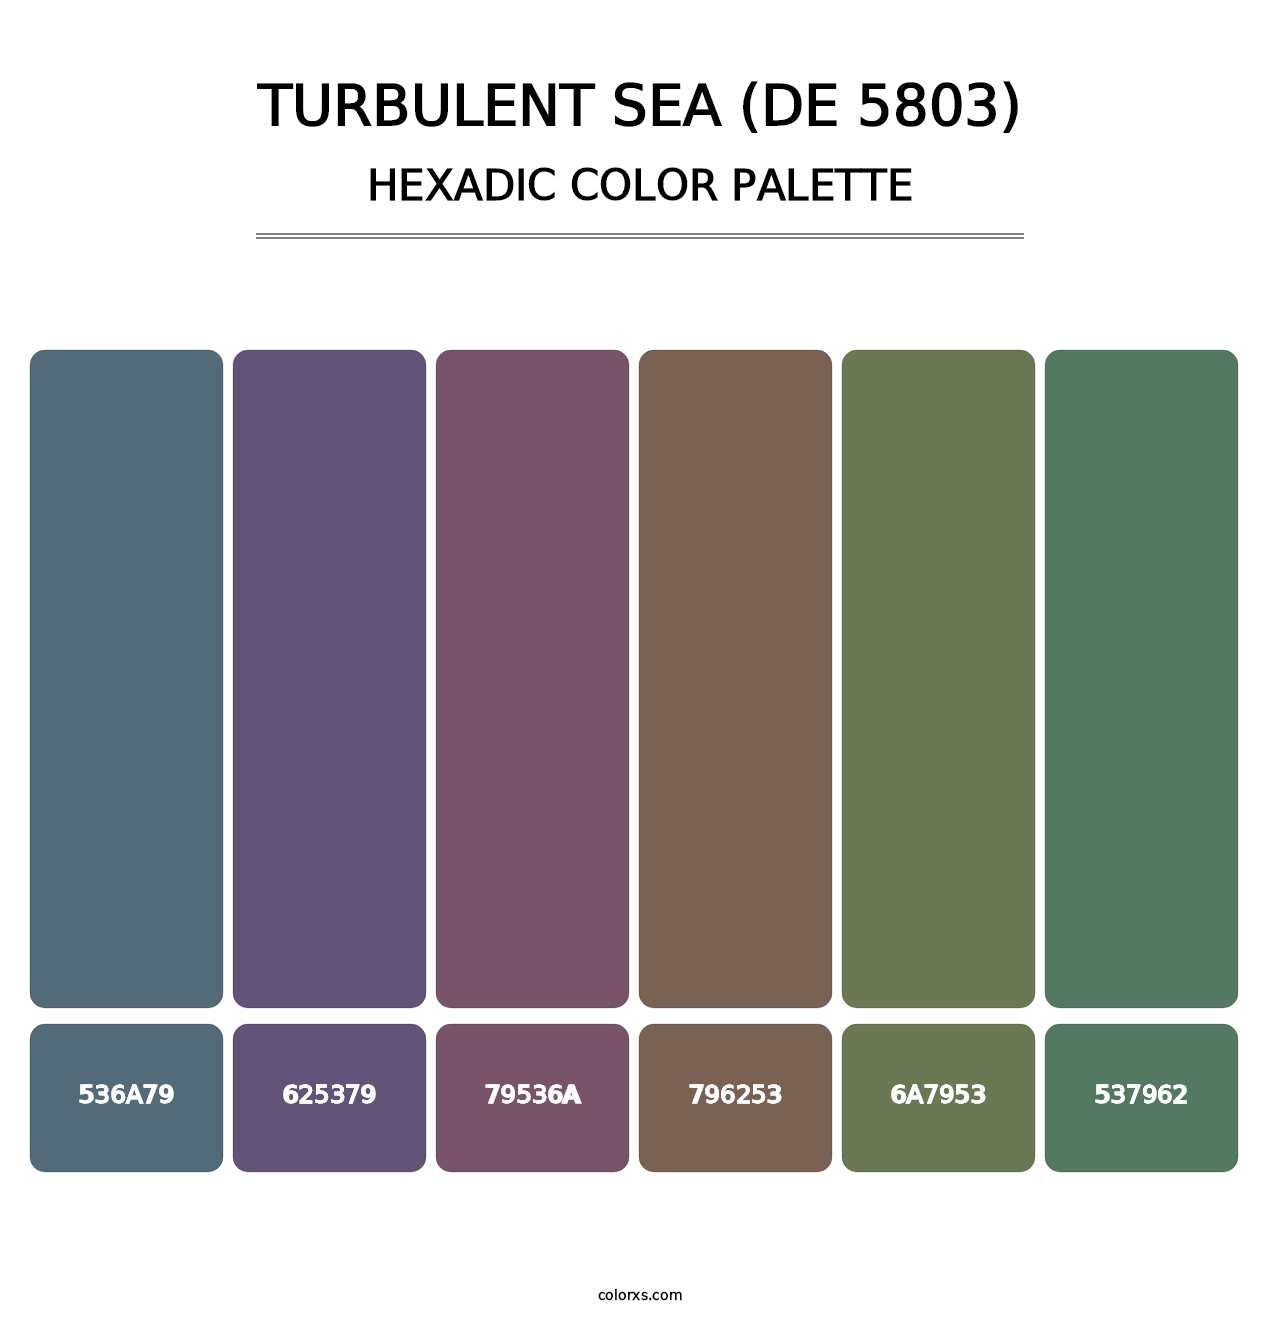 Turbulent Sea (DE 5803) - Hexadic Color Palette